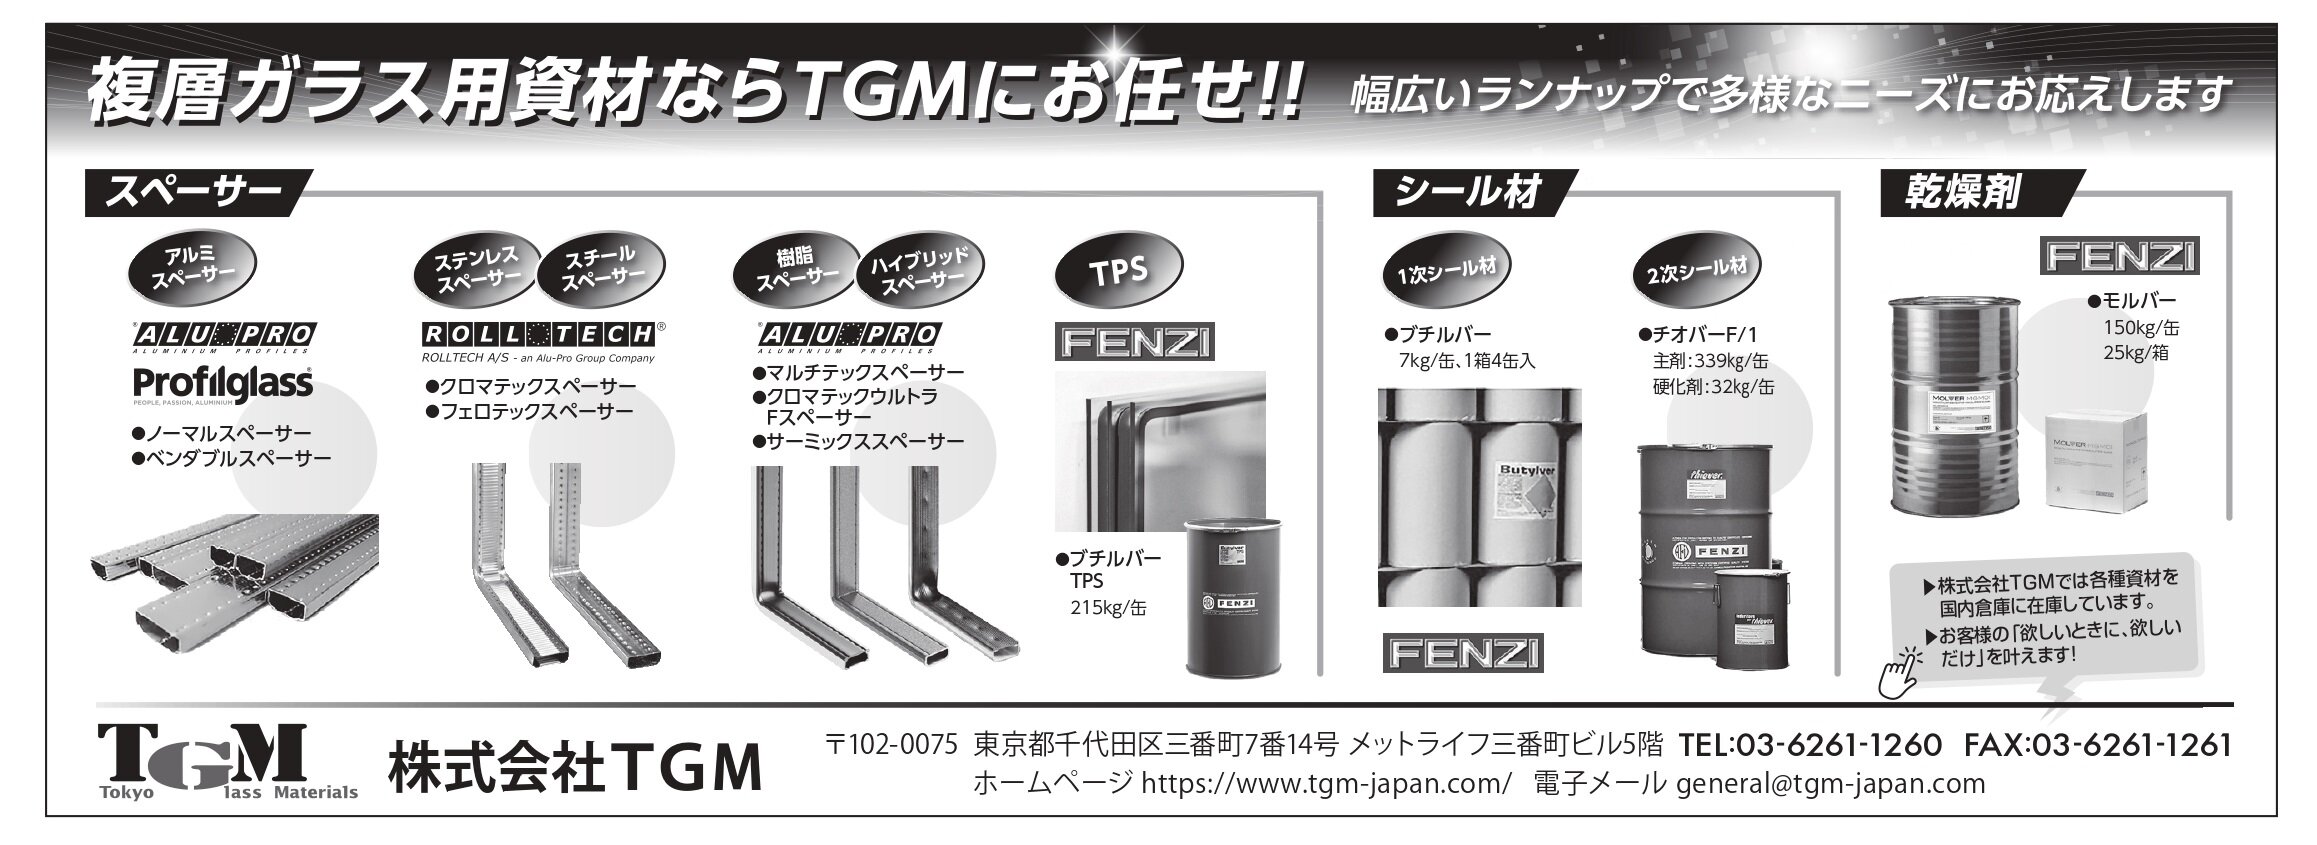 23.11.25 TGM様_広告図案3_page-0001.jpg